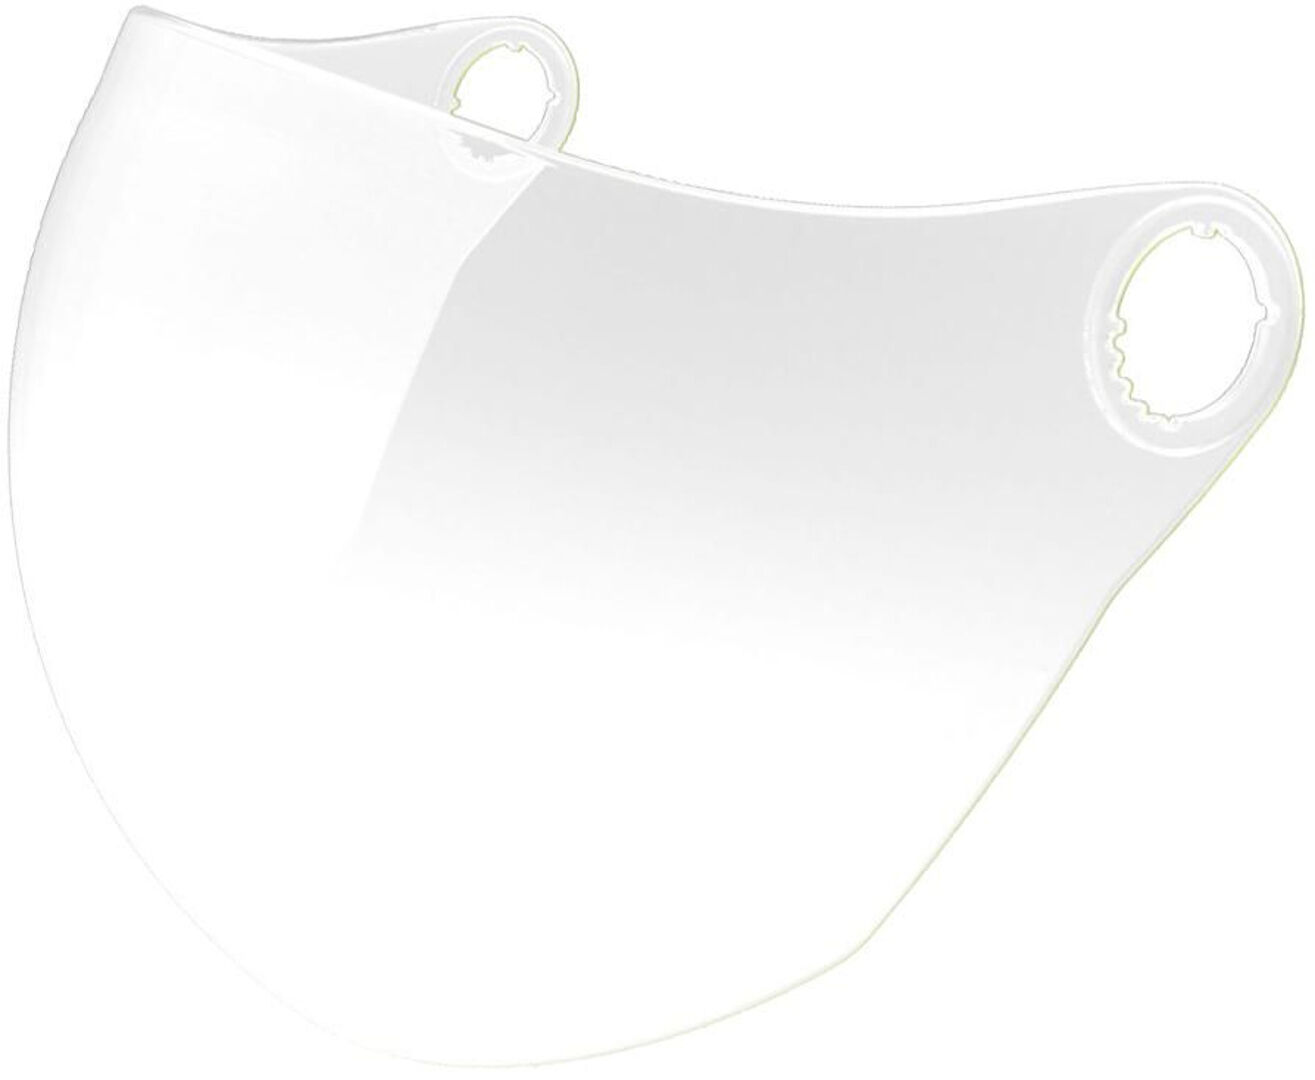 NEXX X.70 Bubble Visera - transparente (un tamaño)